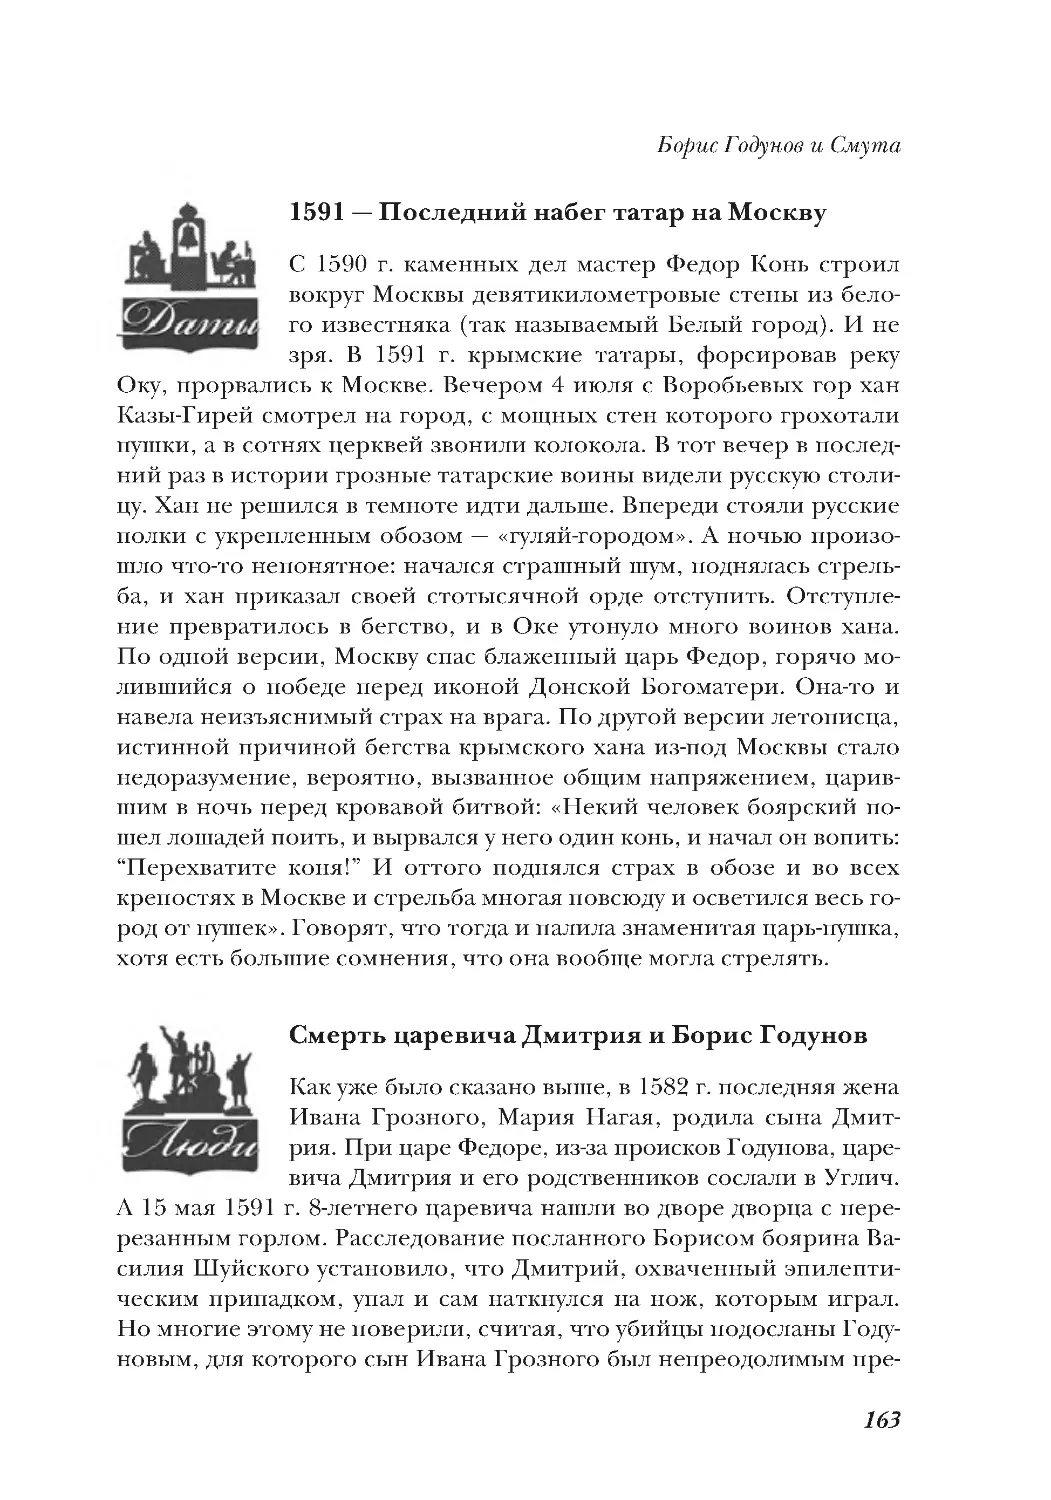 1591 — Последний набегтатар на Москву
Смерть царевича Дмитрия и Борис Годунов